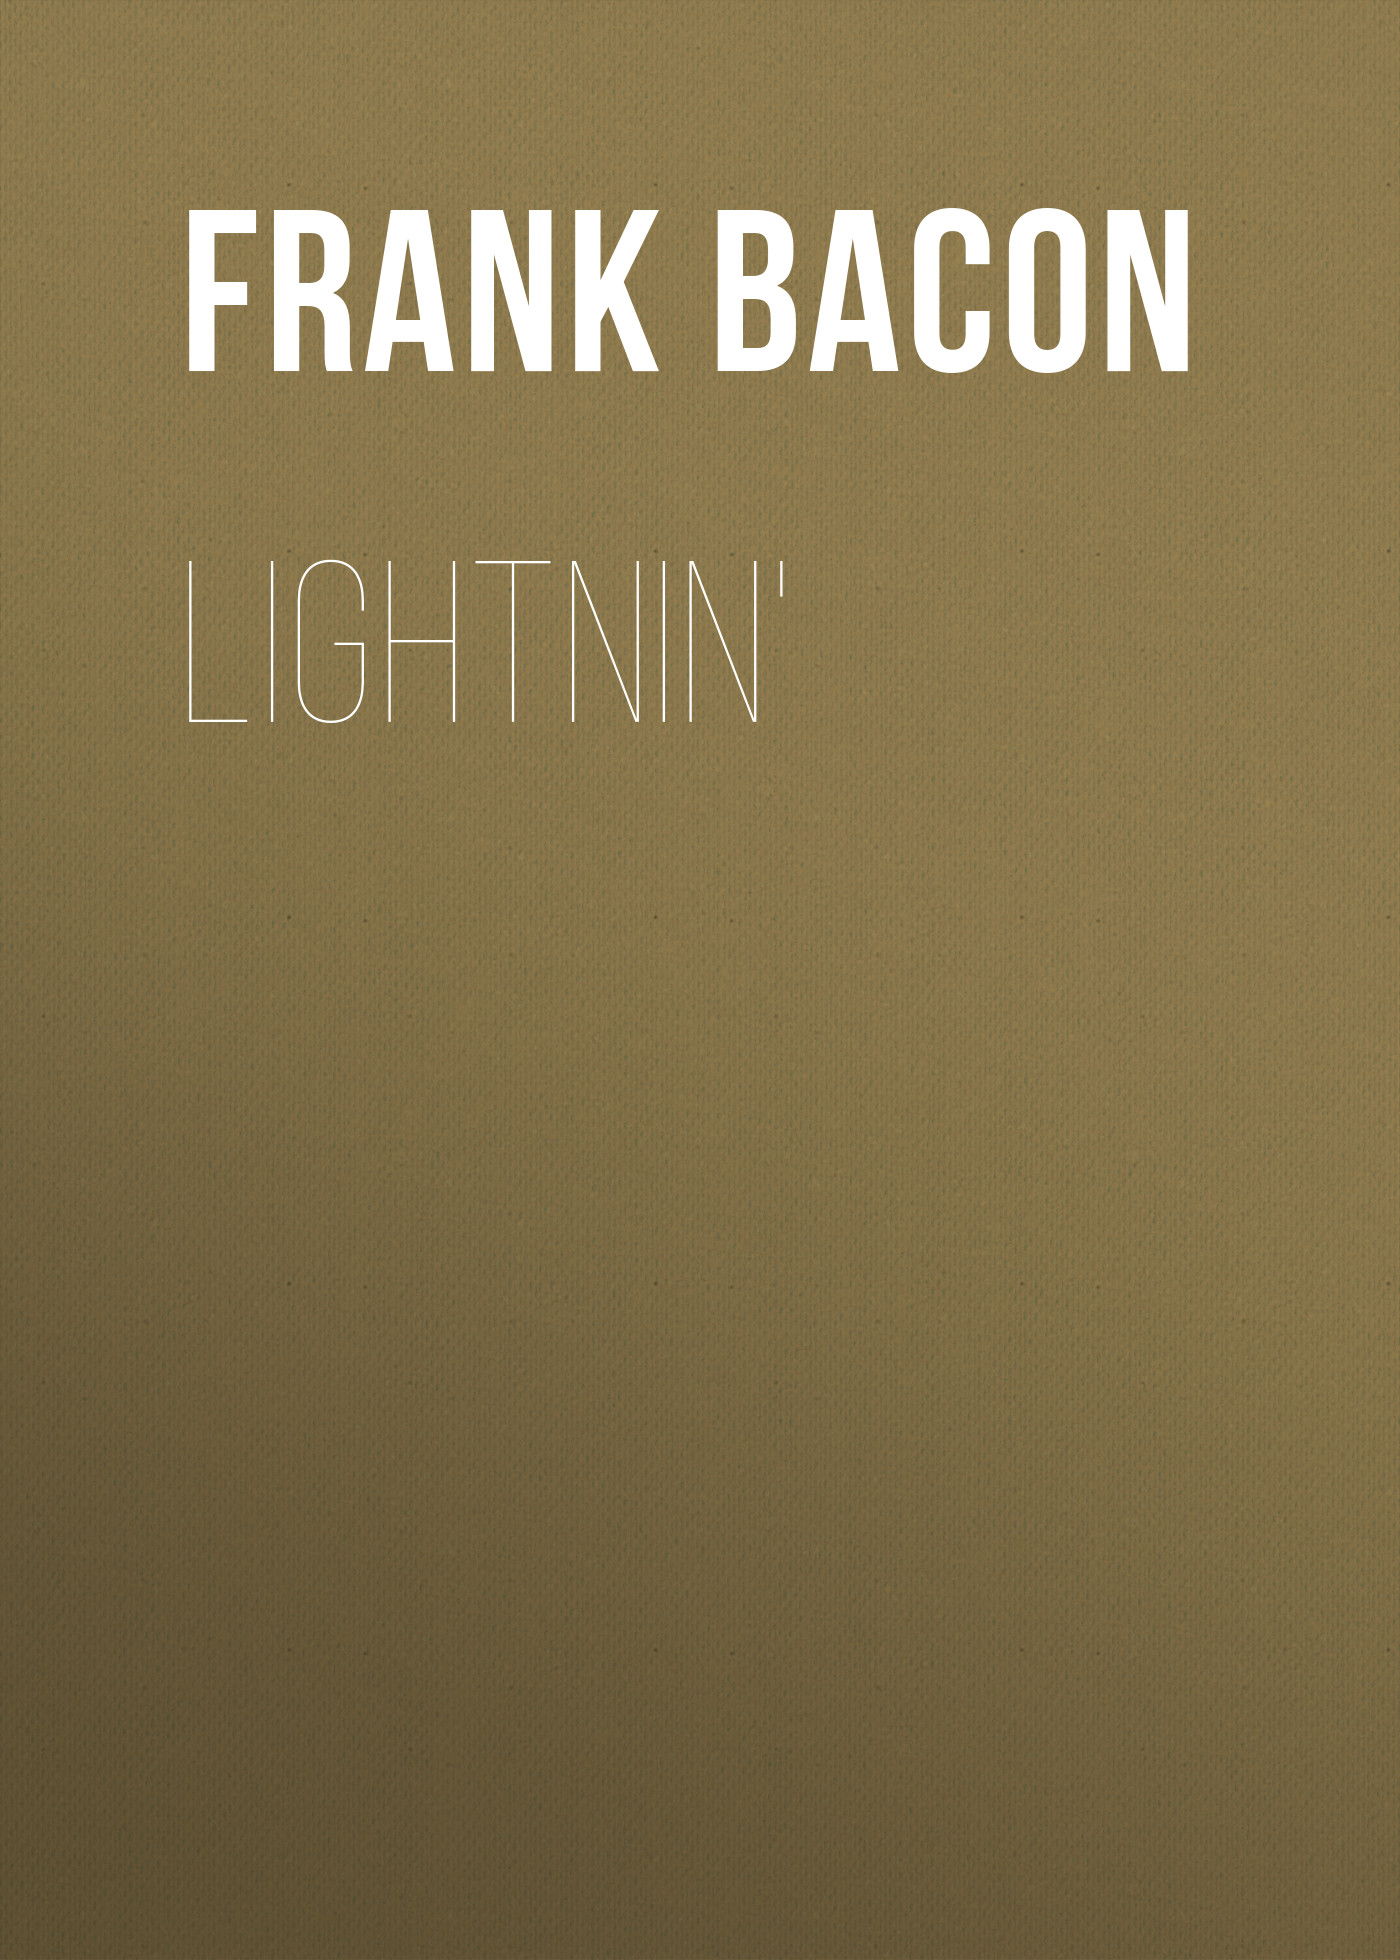 Книга Lightnin' из серии , созданная Frank Bacon, может относится к жанру Зарубежная старинная литература, Зарубежная классика. Стоимость электронной книги Lightnin' с идентификатором 24176764 составляет 0.90 руб.